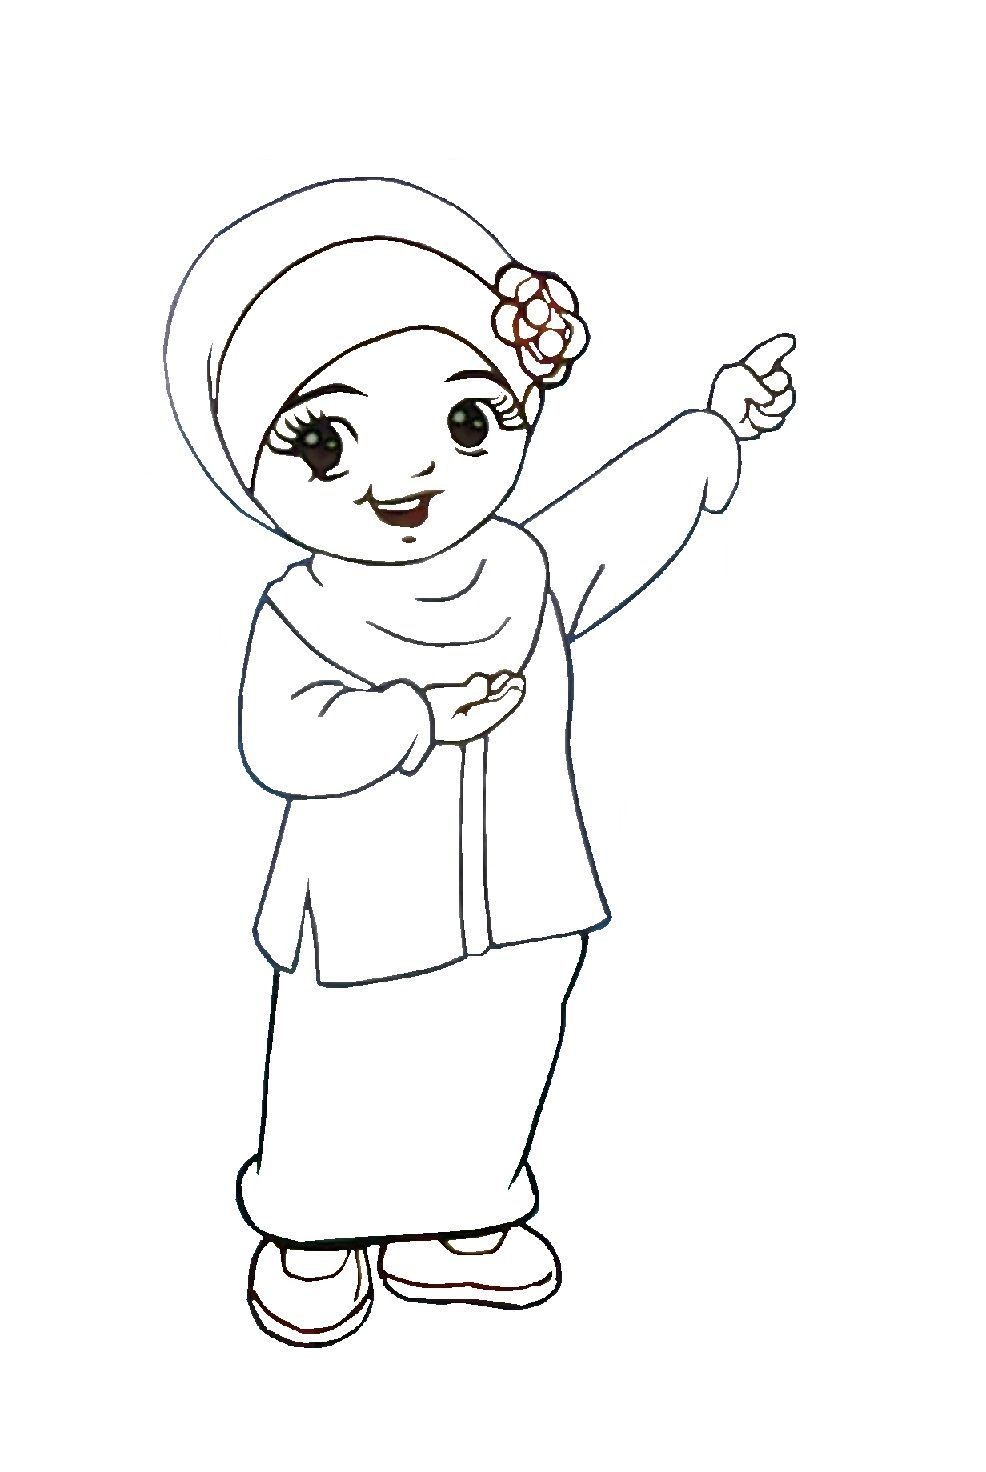 Gambar Kartun Anak Muslim Dan Muslimah Gambar Kartun